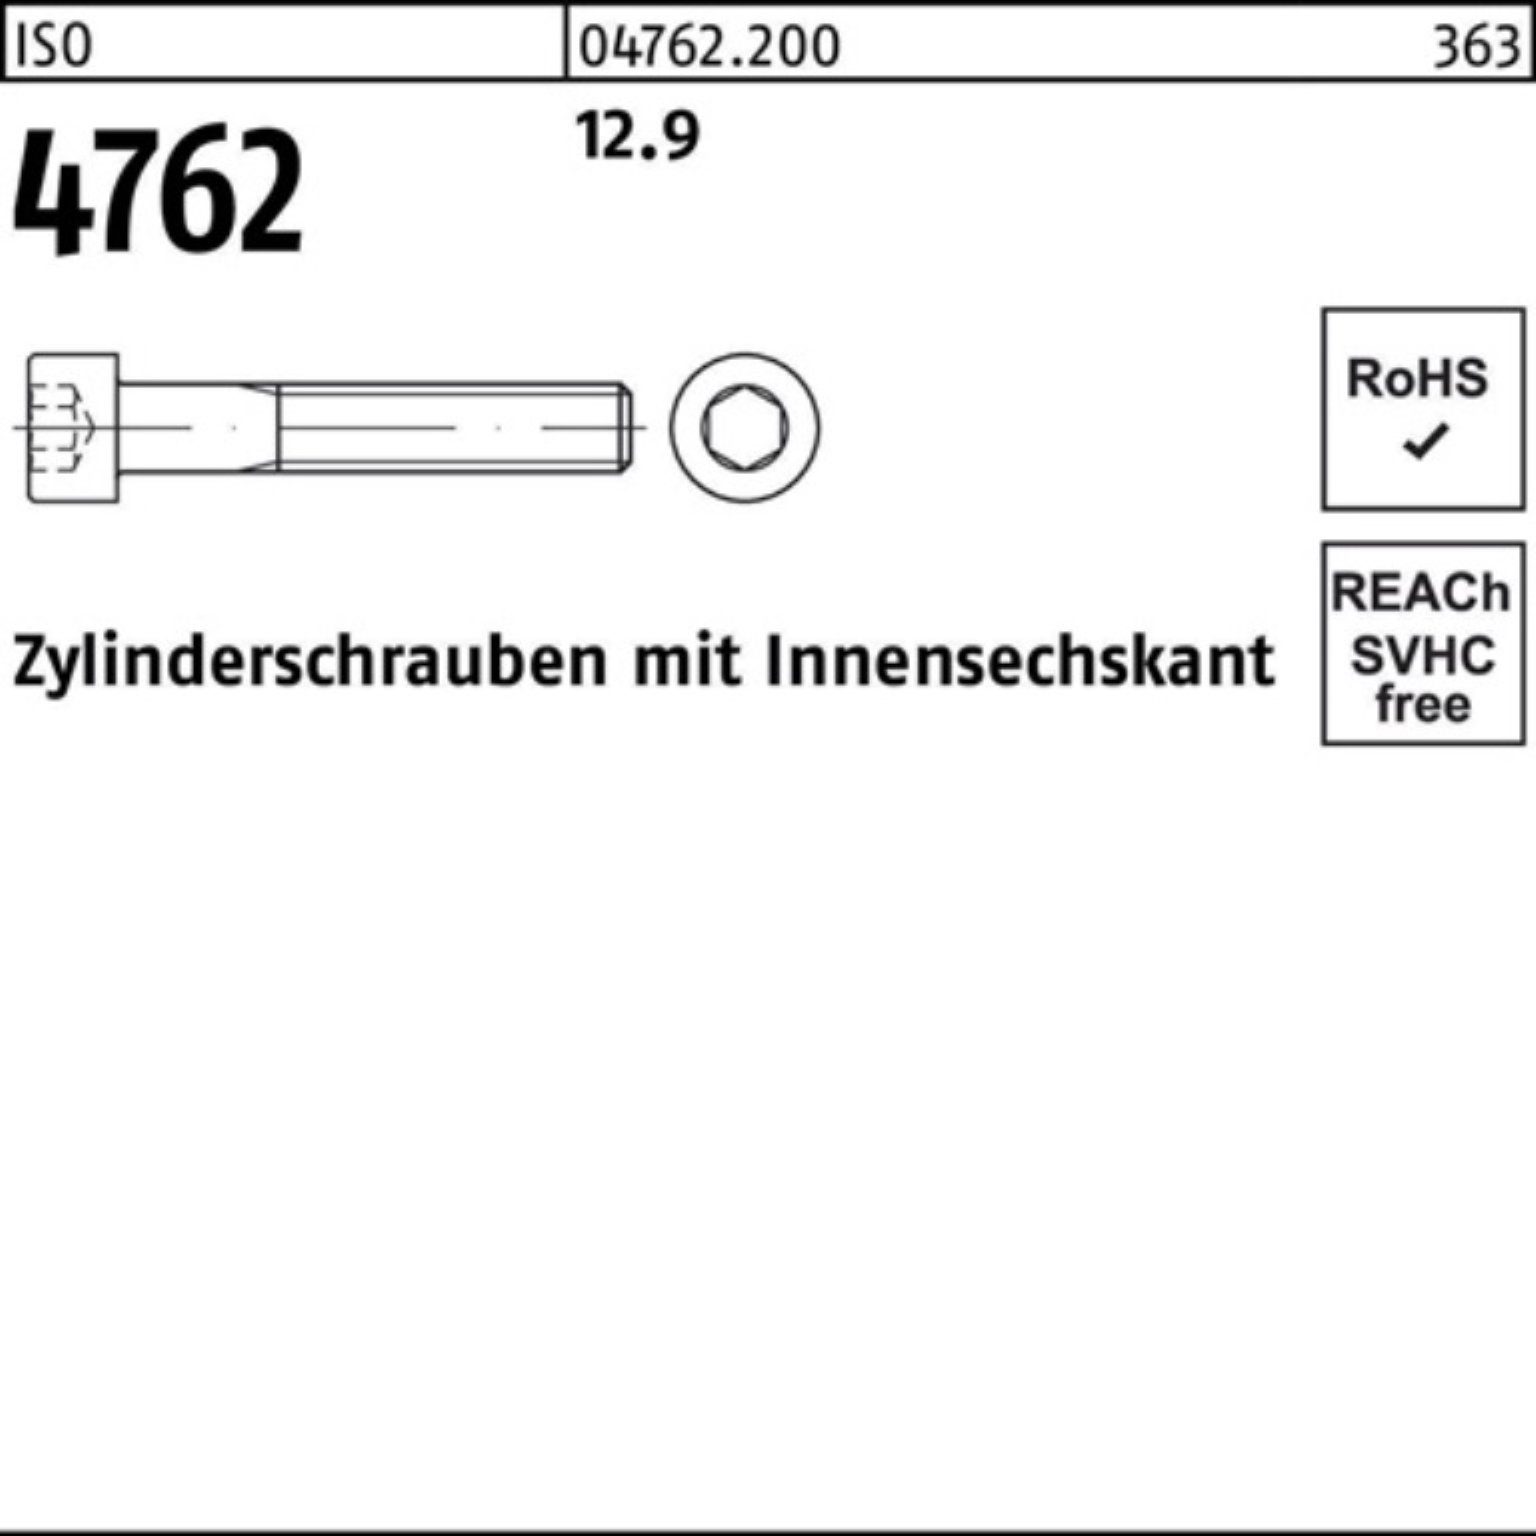 [Super günstig] Reyher Zylinderschraube 100er Pack Zylinderschraube 120 4762 Stück M39x Innen-6kt 1 12.9 ISO